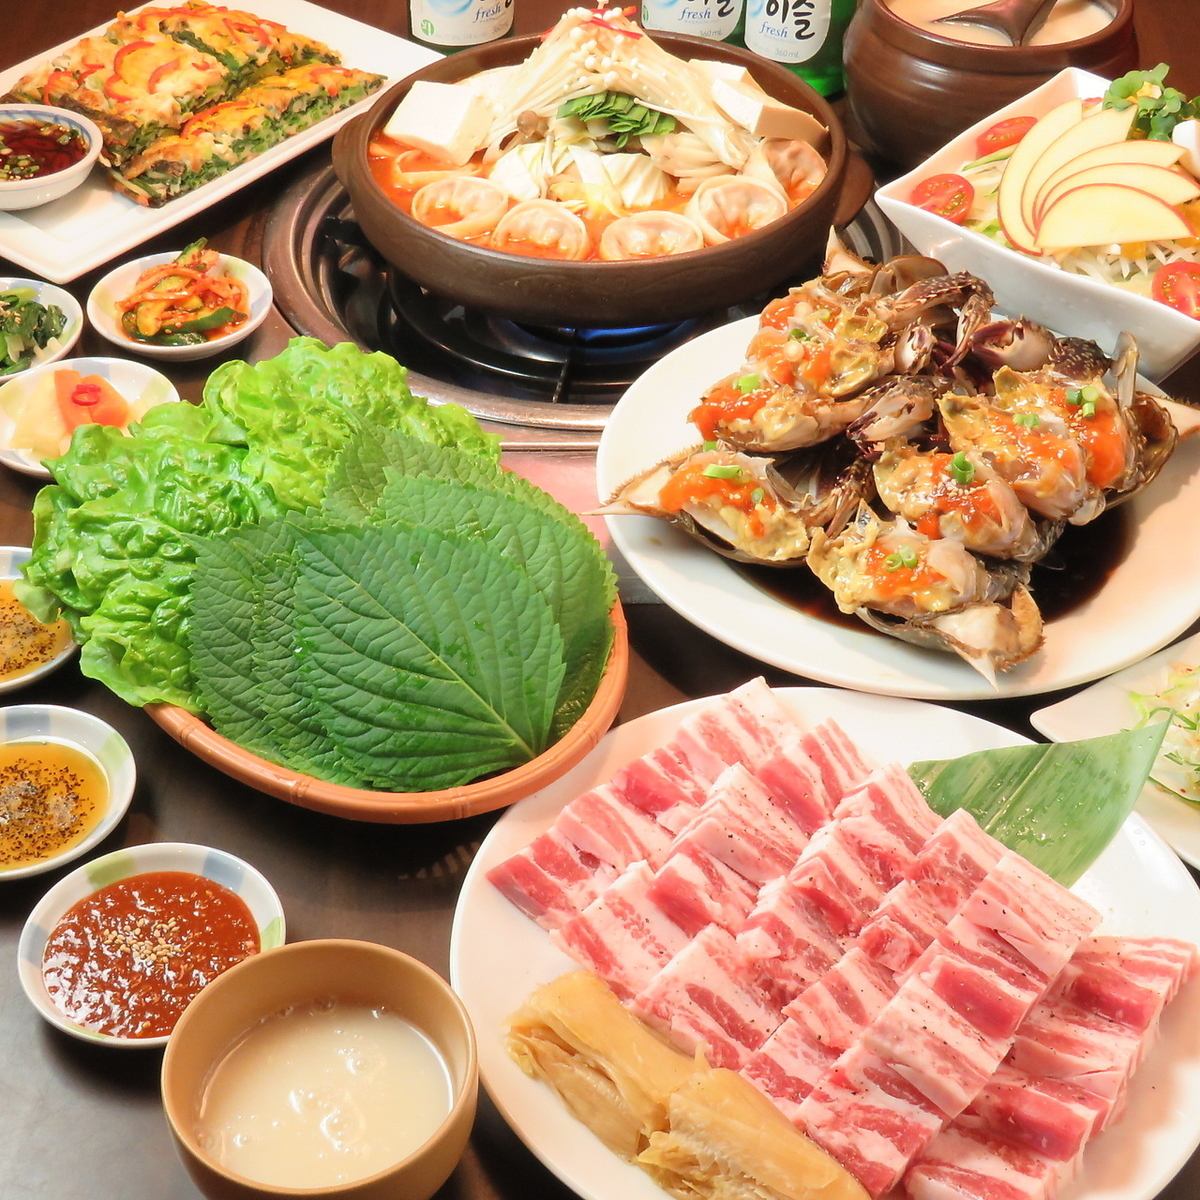 한국에서 '음식의 도시'라고 말한 본고장의 한국요리를 애정 담아 만들고 있습니다.